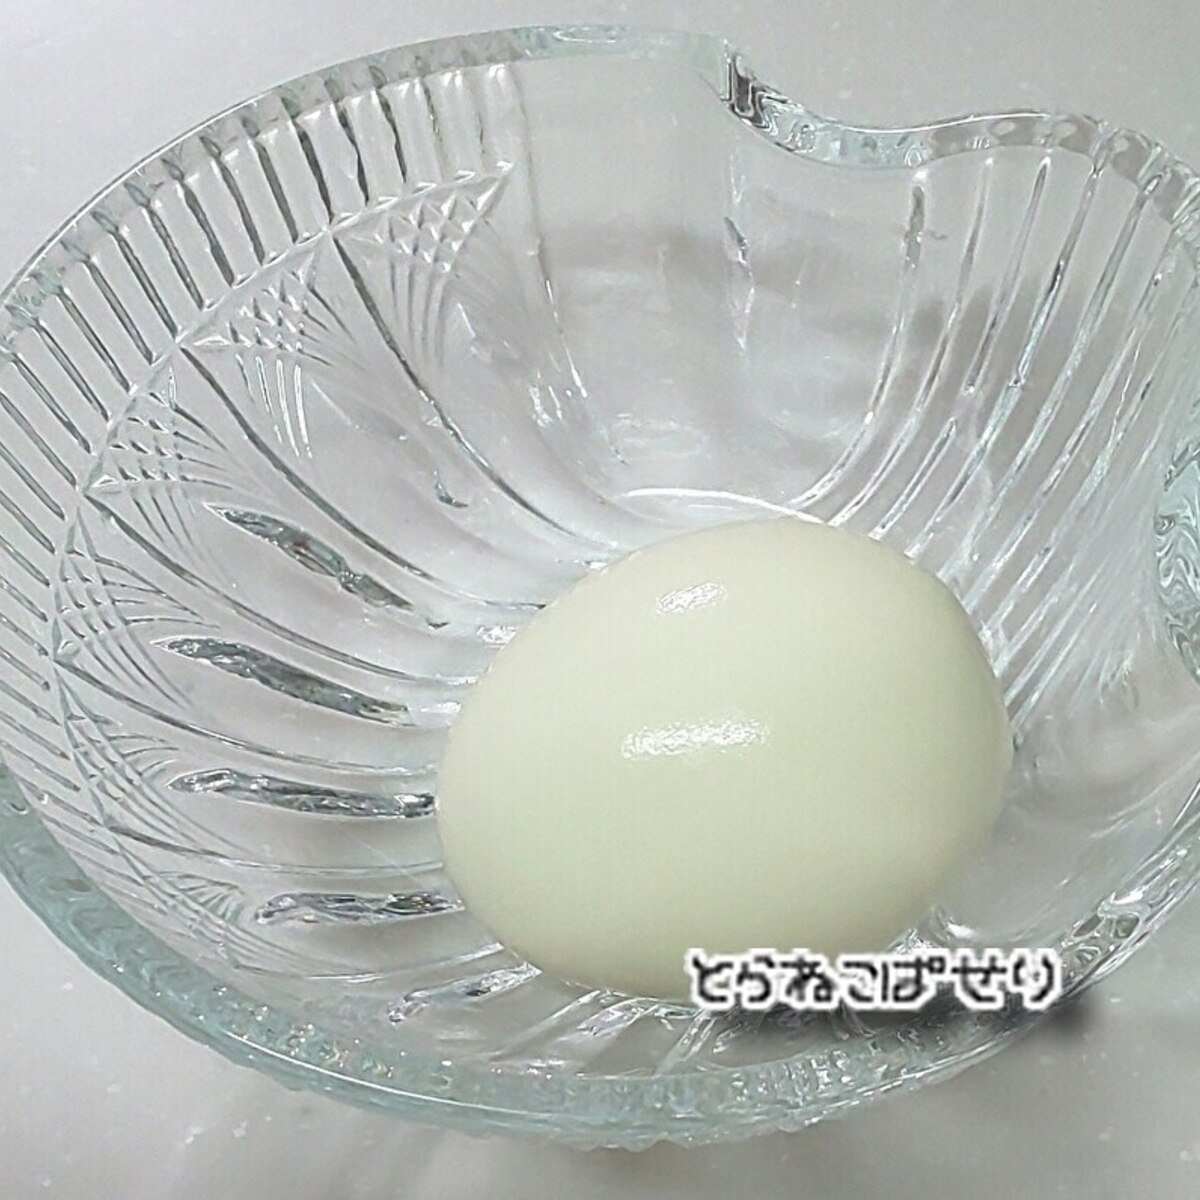 ゆで卵の殻をむきやすくする方法 レシピ 作り方 By とらねこのぱせり 楽天レシピ